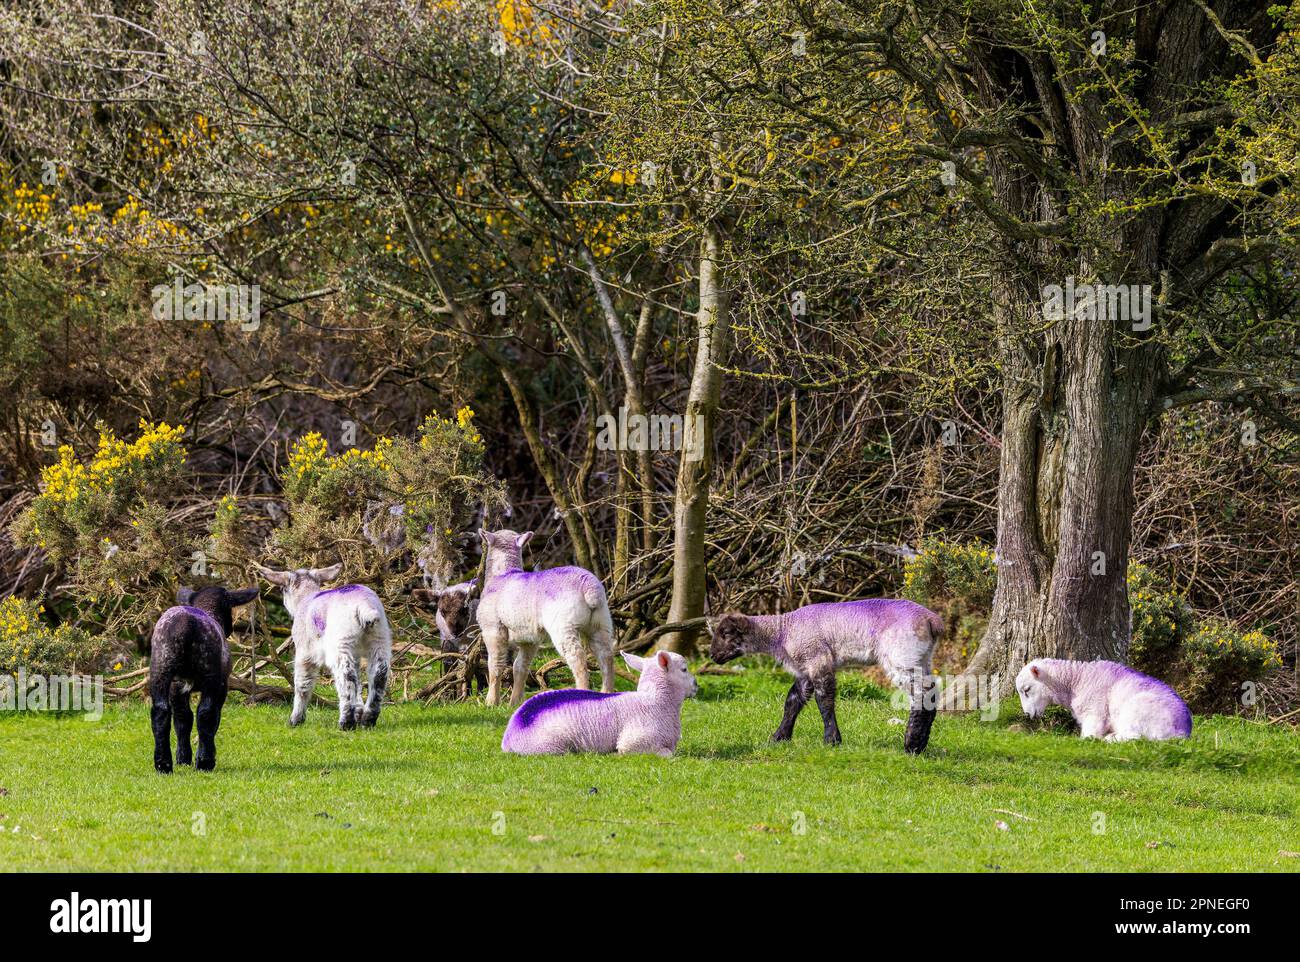 Sette giovani pecore in erba pascolo campo e cespugli giallo furze. Marcare a caldo viola su cappotti di lana degli agnelli. Il Curragh, Kildare, Irlanda Foto Stock